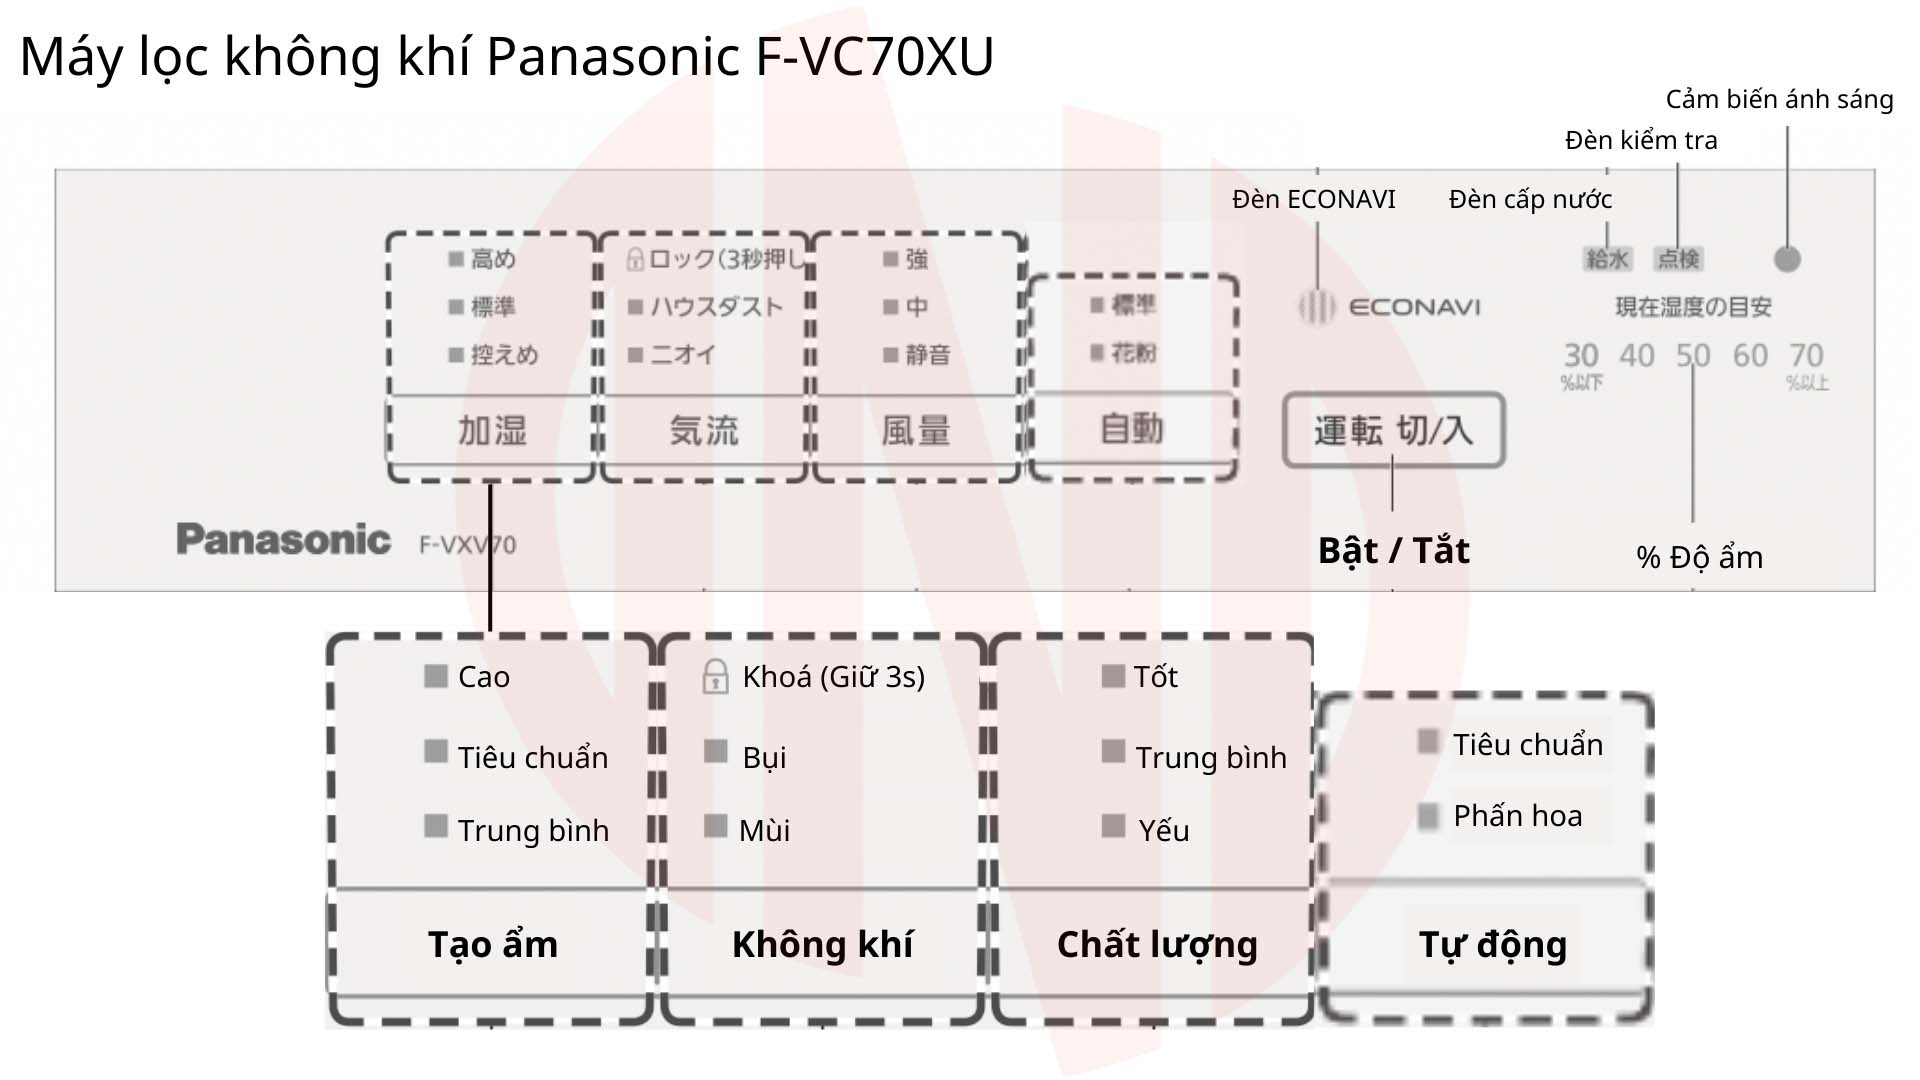 Hướng dẫn sử dụng máy lọc không khí Panasonic F-VC70XU